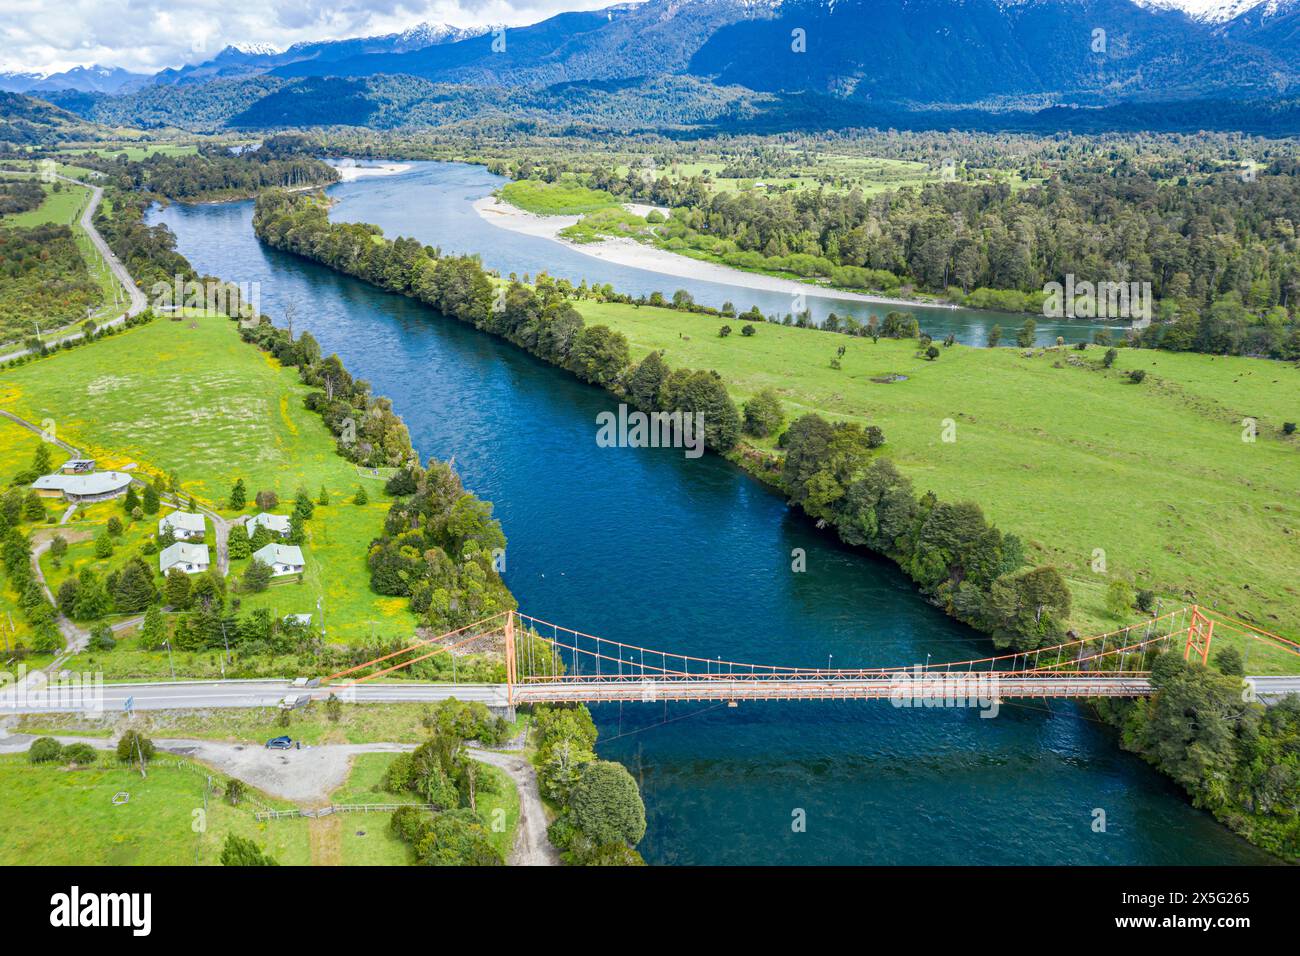 Pont sur la rivière Rio Rosselot, juste au nord du village la Junta, vue aérienne, Patagonie, Chili Banque D'Images